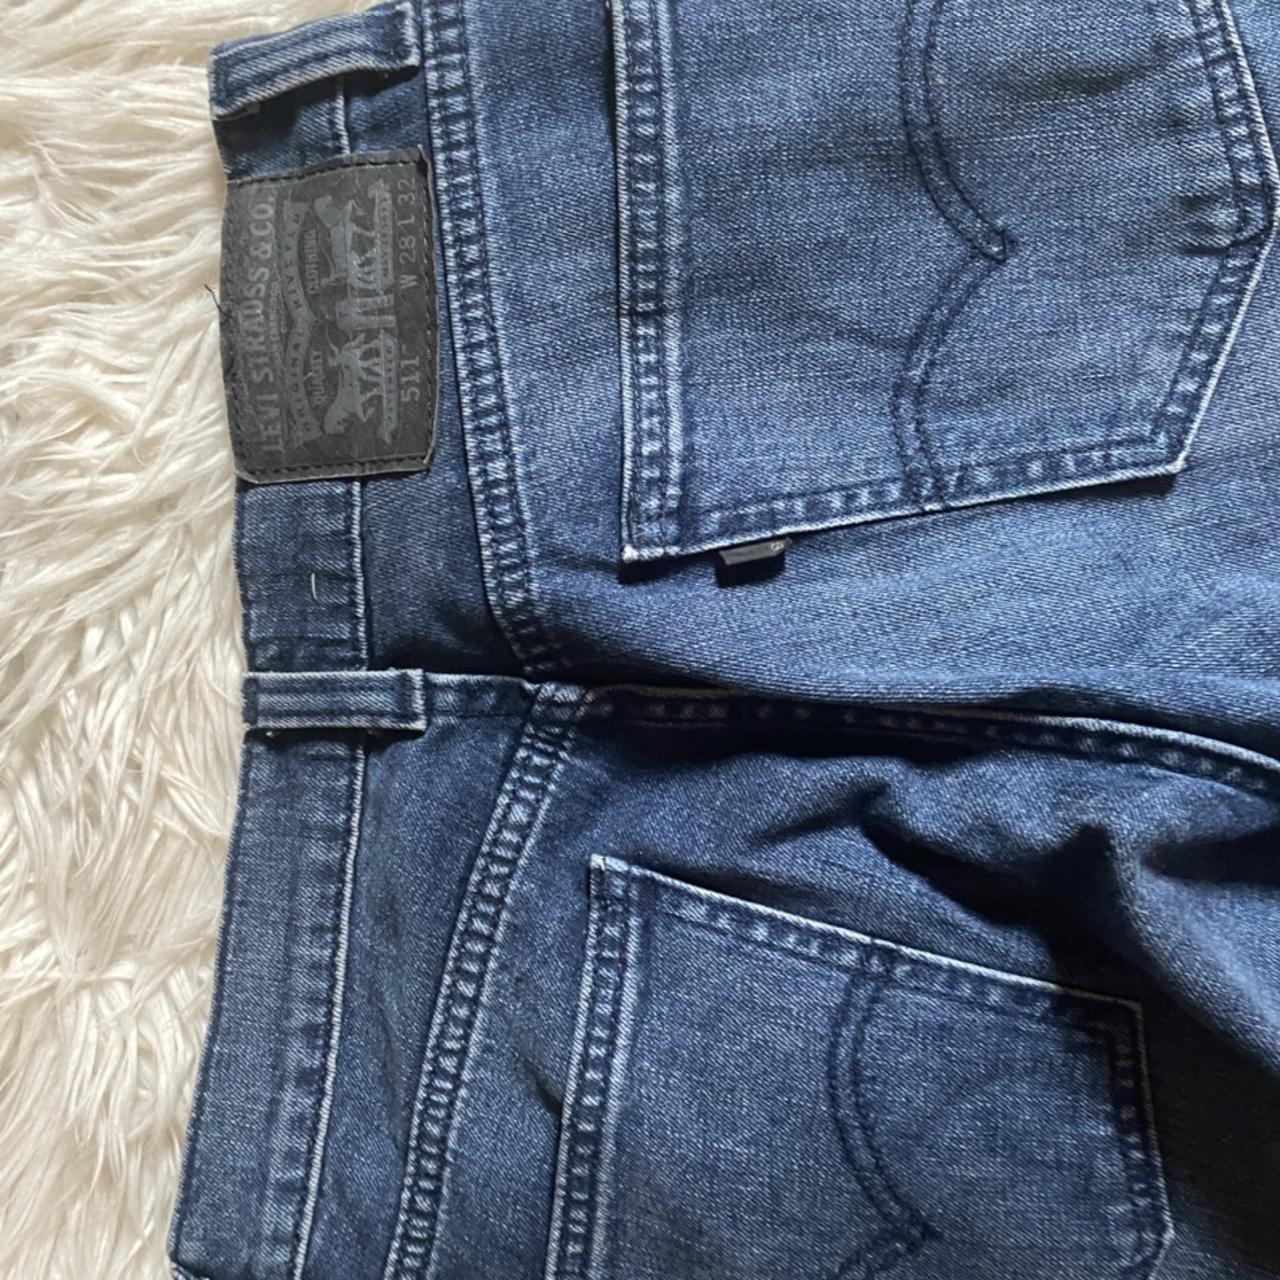 Levi’s 511 w28 l32 dark denim jeans - Depop